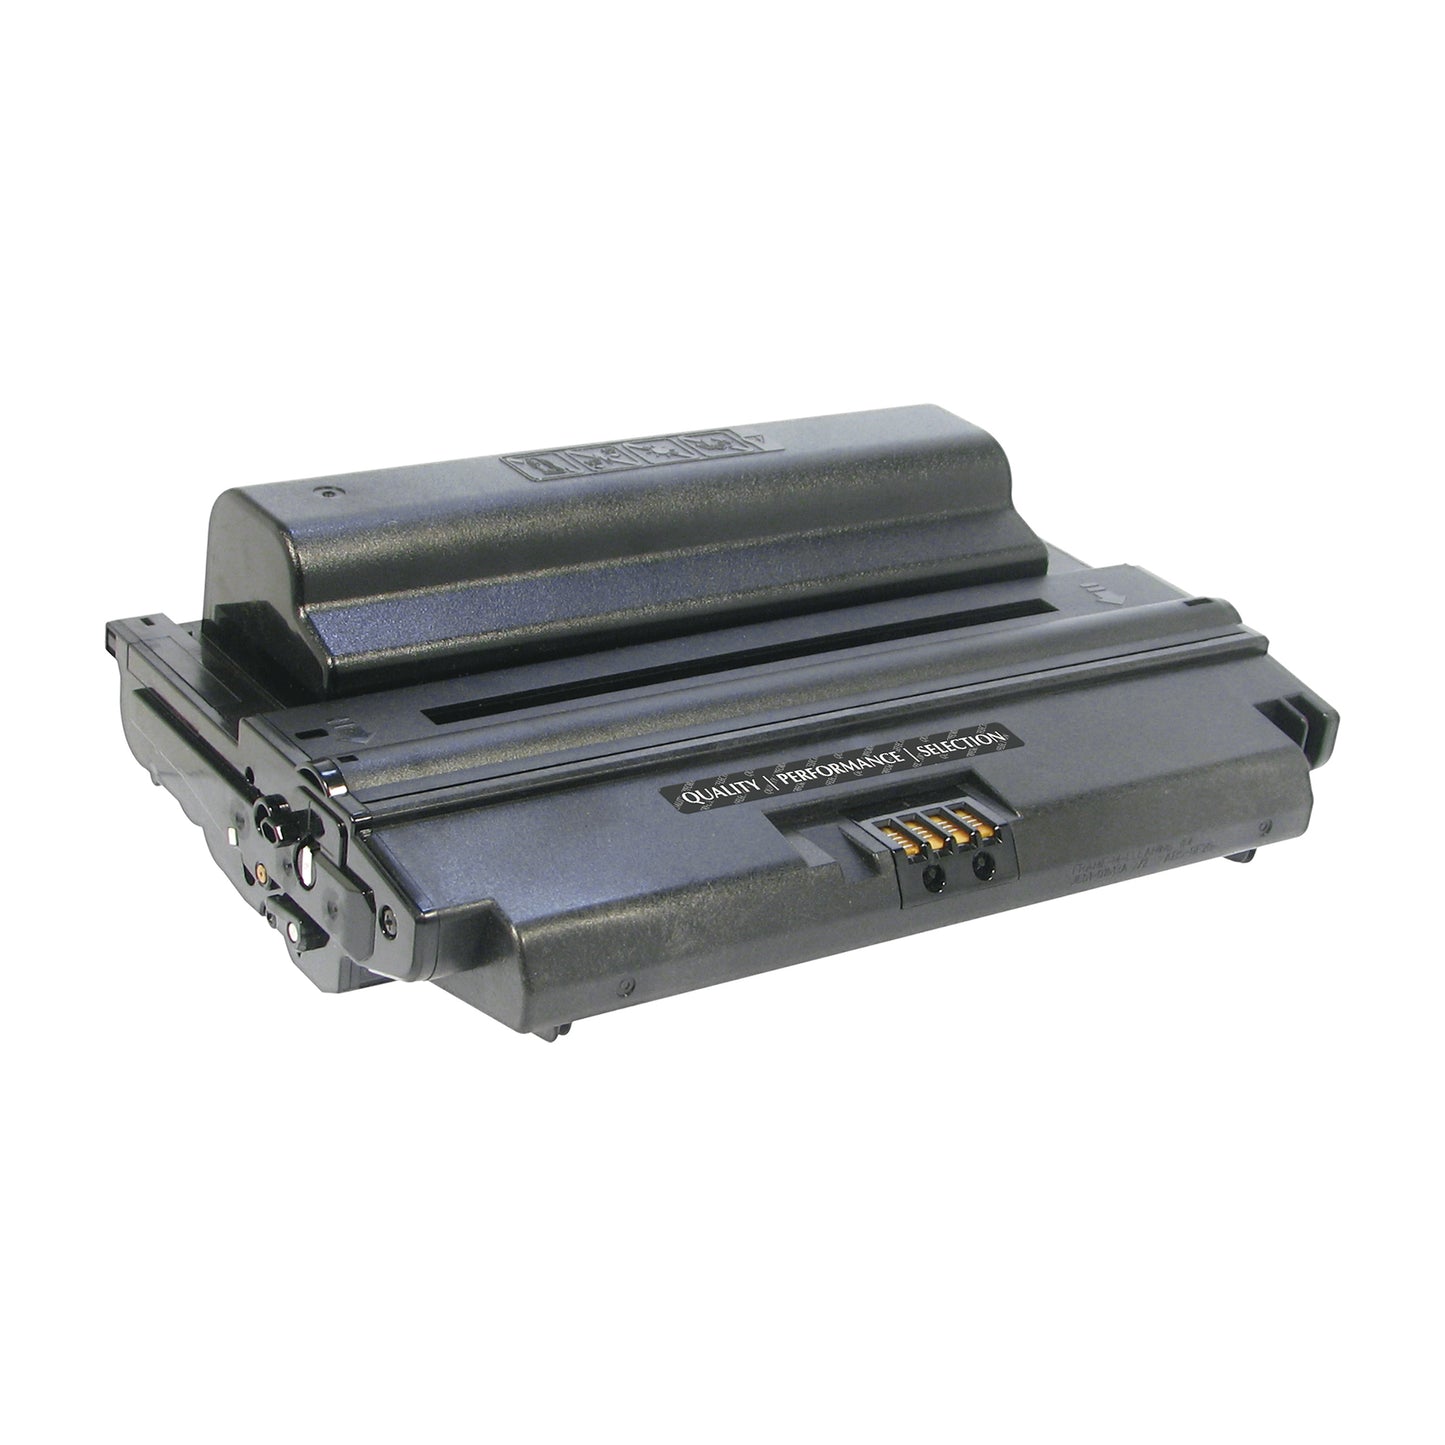 Xerox 108R00795/108R00793 Remanufactured High Yield Toner Cartridge